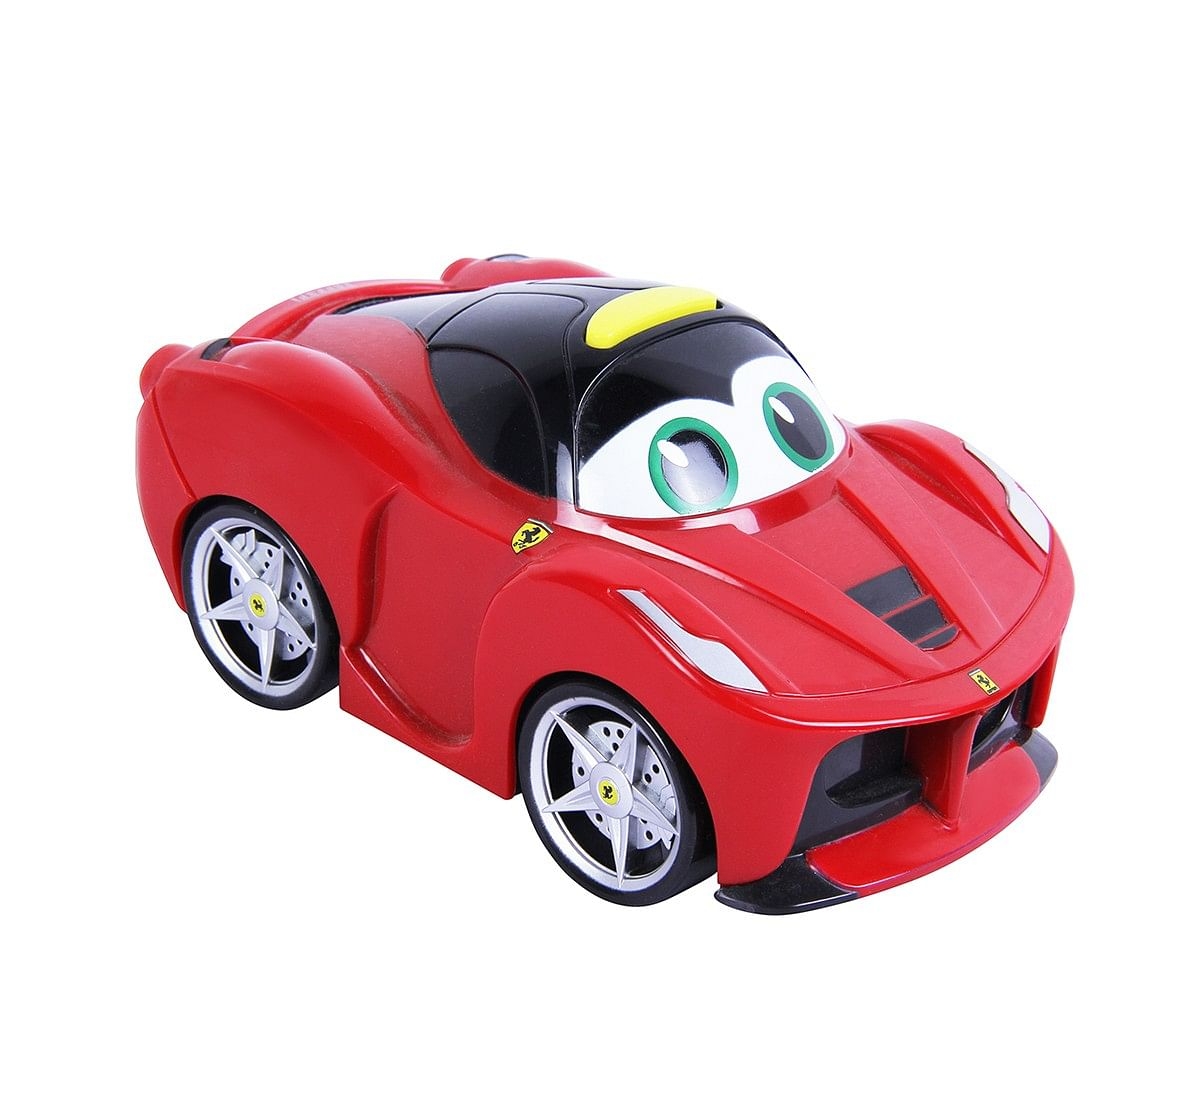 Bburago Junior Junior Ferrari Touch Activity Toys for Kids age 12M+ (Red)